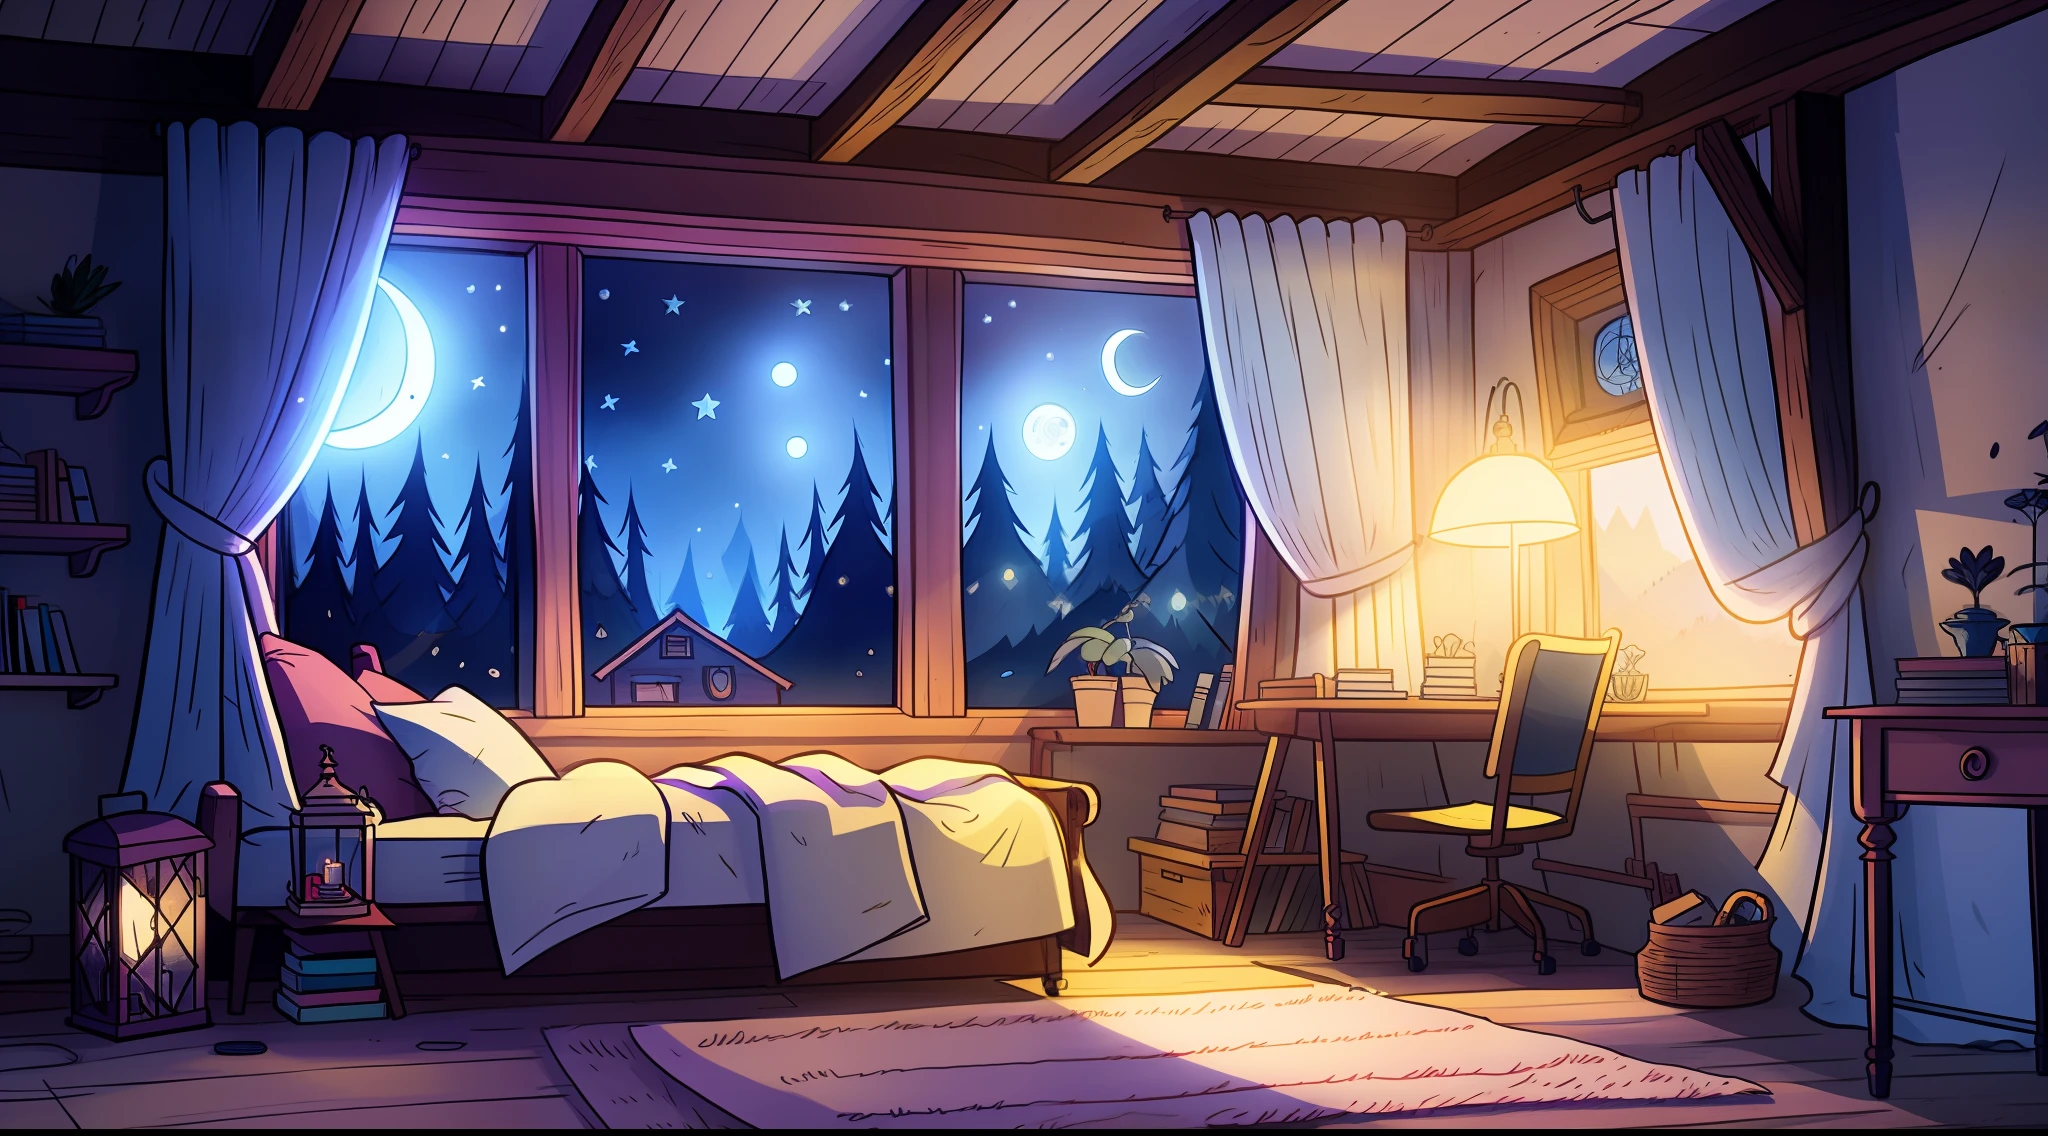 una acogedora habitación por la noche, La luz de la luna brillando a través de la ventana, Ilustración detallada, dibujos animados, no estilo de gravityfalls,adulto corto